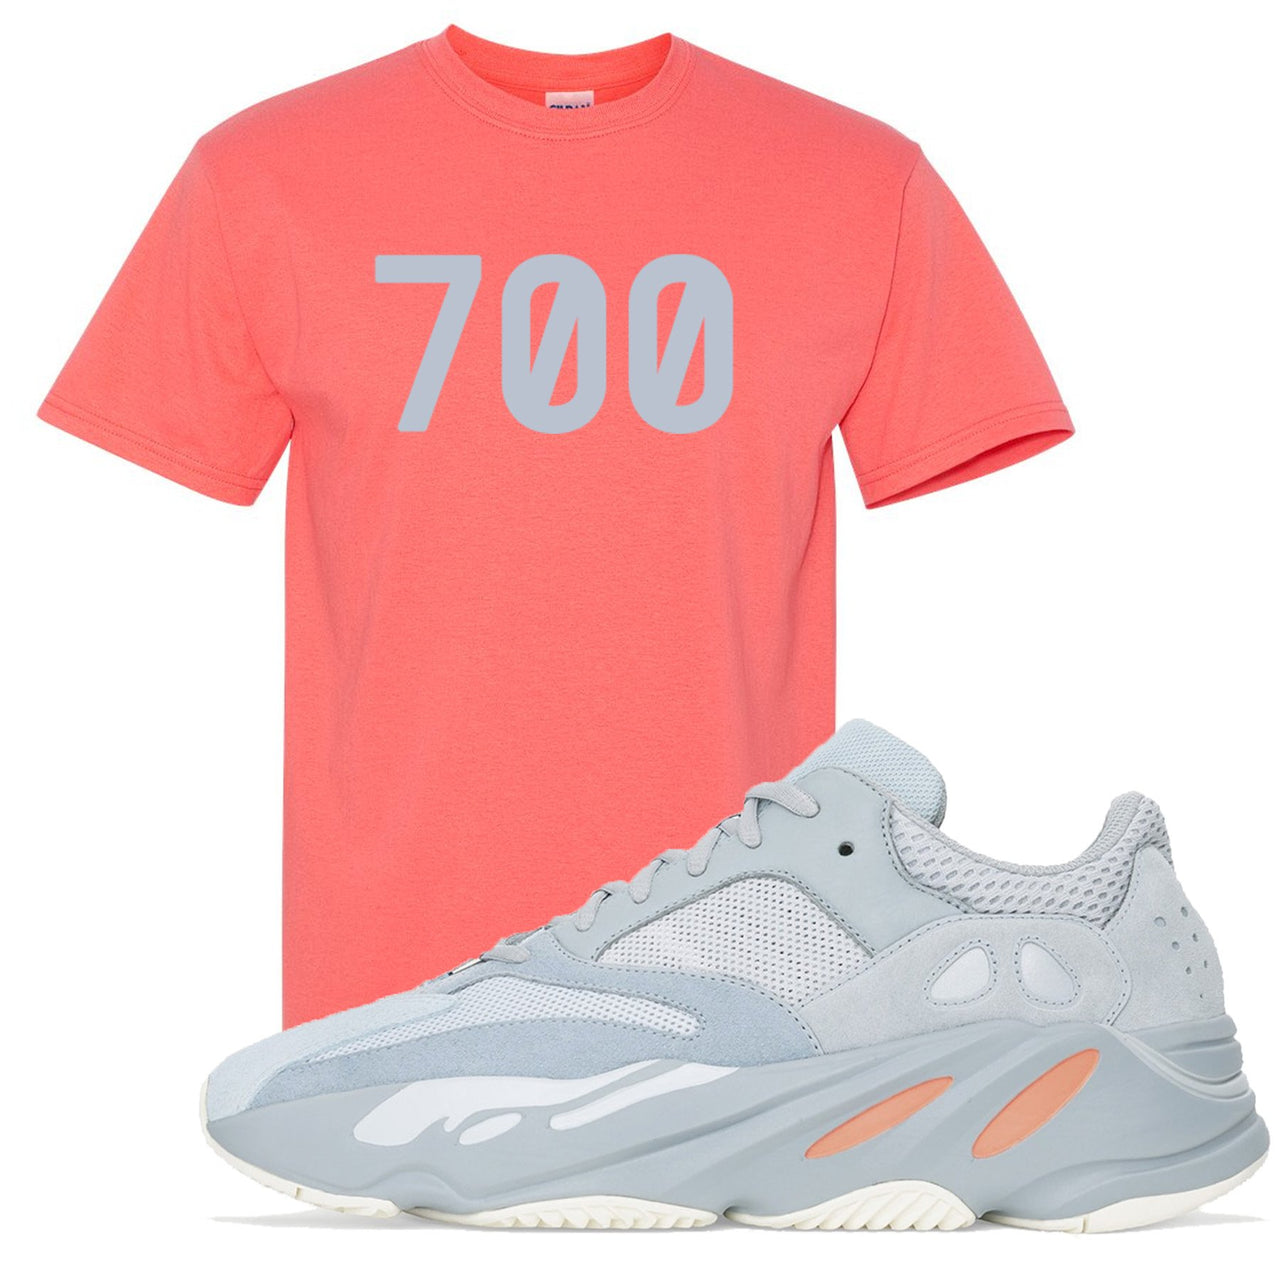 Inertia 700s T Shirt | 700, Coral Silk